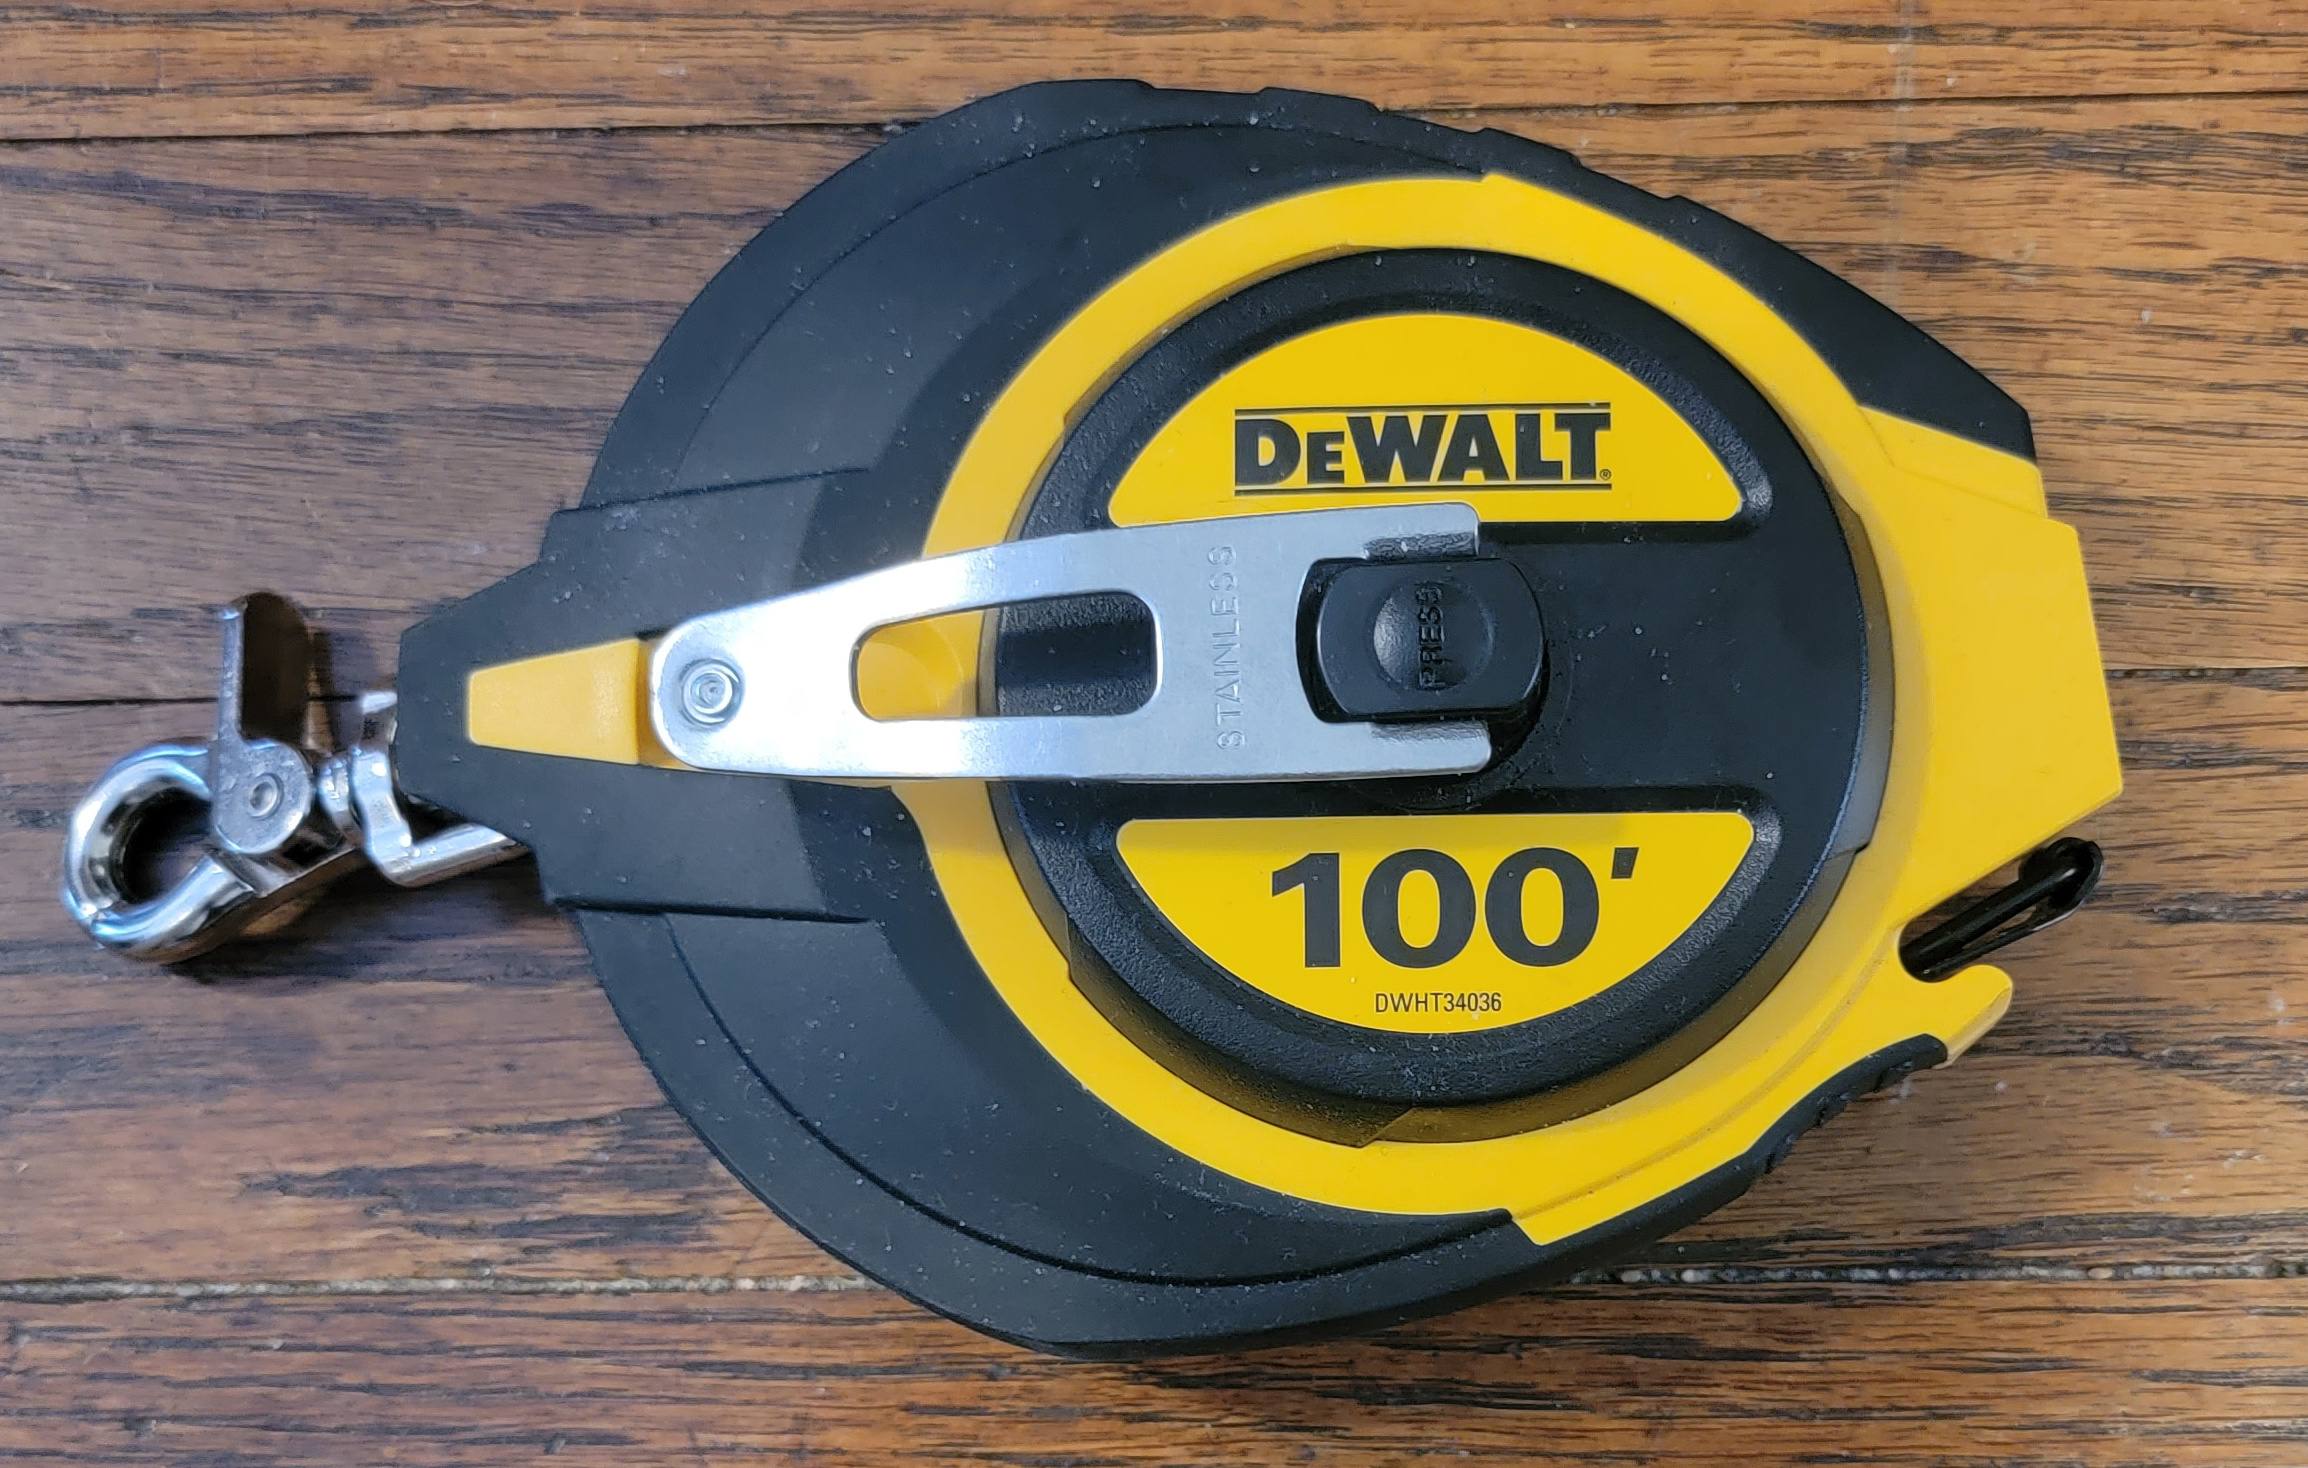 Old Duffer Golf image of the DEWALT 100 foot reel tape measure